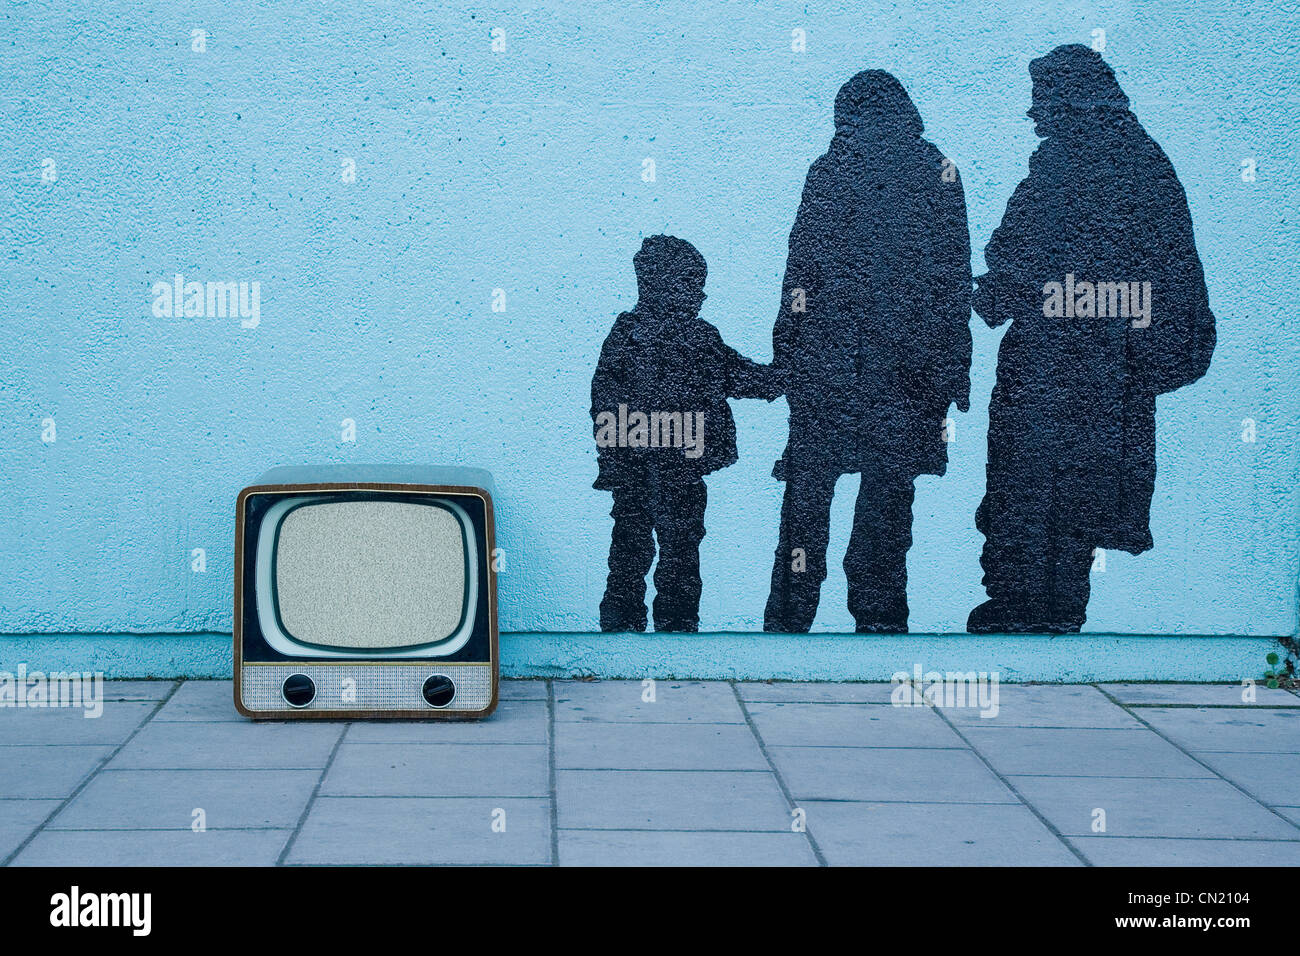 La télévision par mur bleu rétro avec fresque de trois personnes Banque D'Images